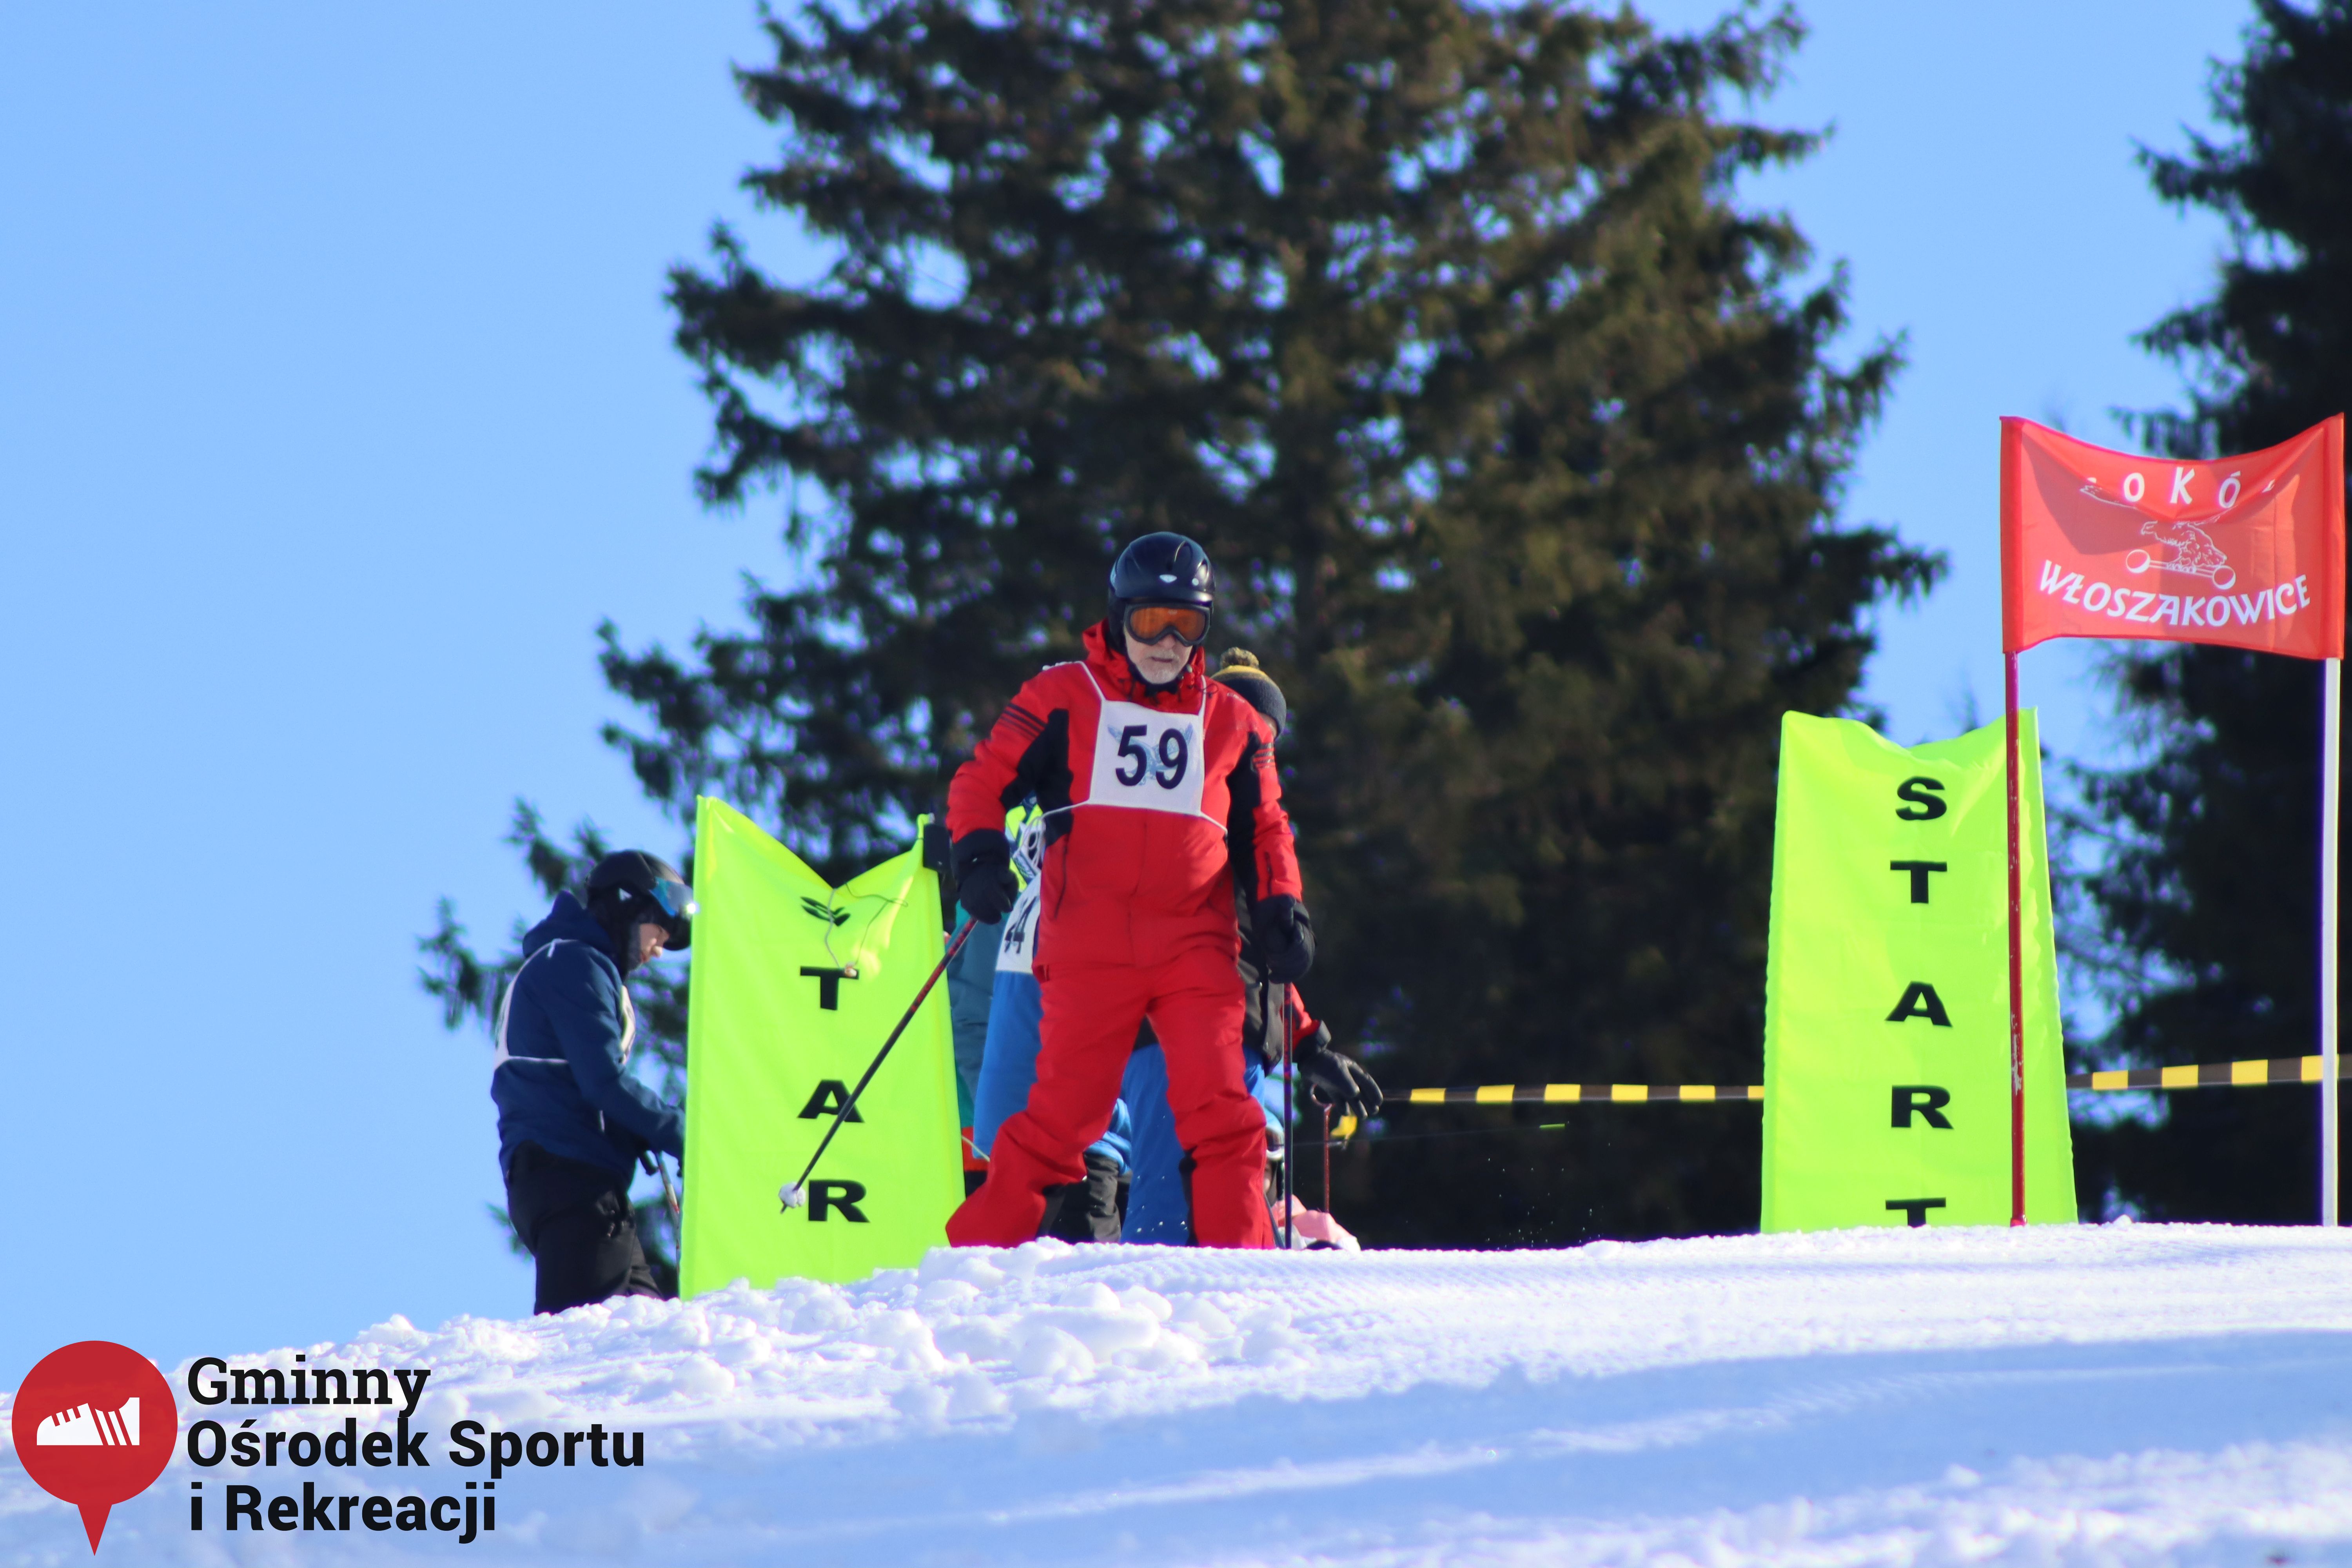 2022.02.12 - 18. Mistrzostwa Gminy Woszakowice w narciarstwie040.jpg - 1,44 MB